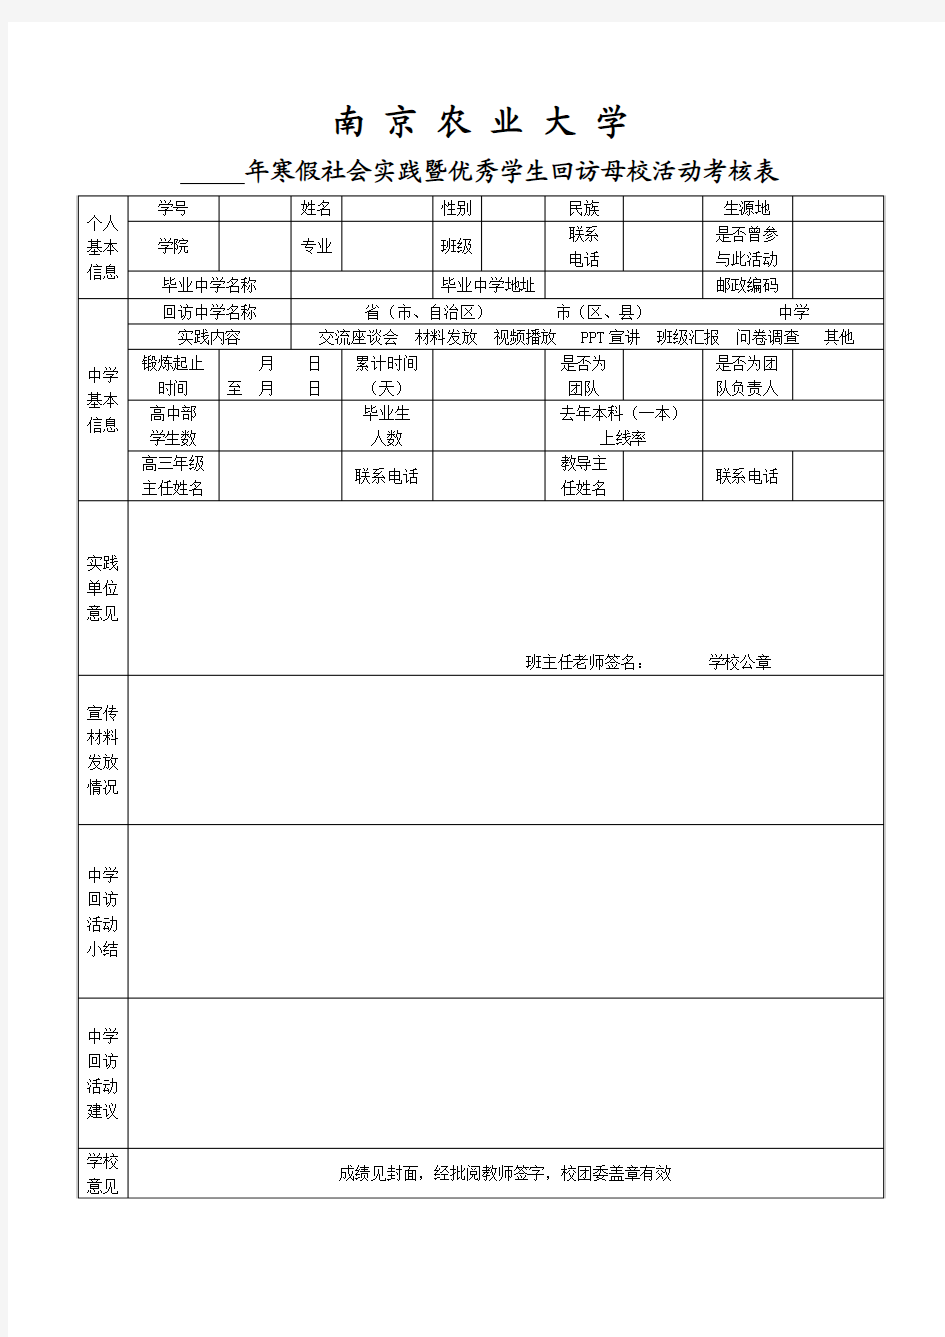 南京农业大学寒假社会实践暨优秀学子回访母校活动论文考核表